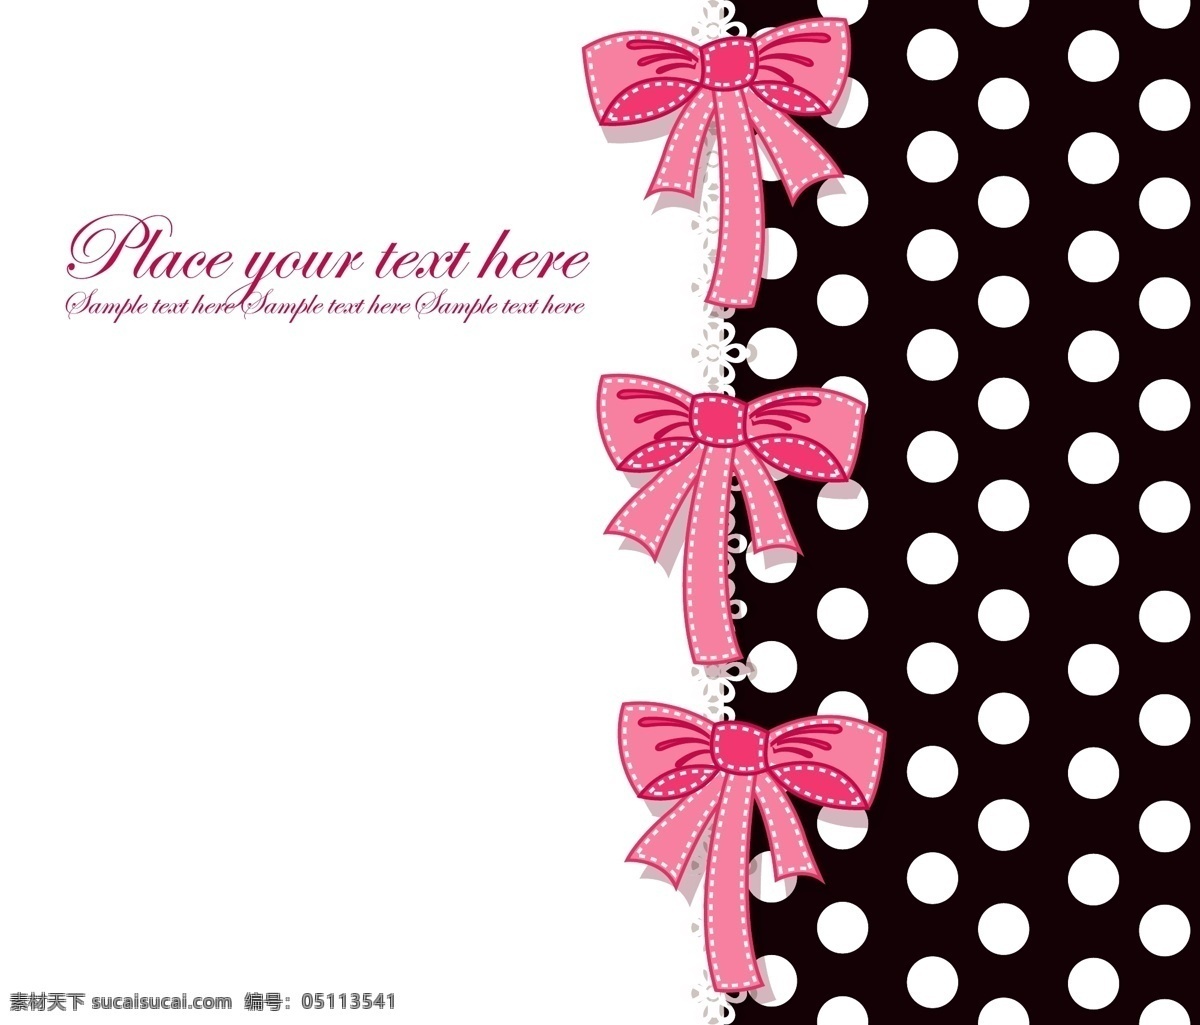 可爱 蝴蝶结 矢量 几何 元素 粉红色 背景素材 源文件 贺卡背景 免费素材 广告元素